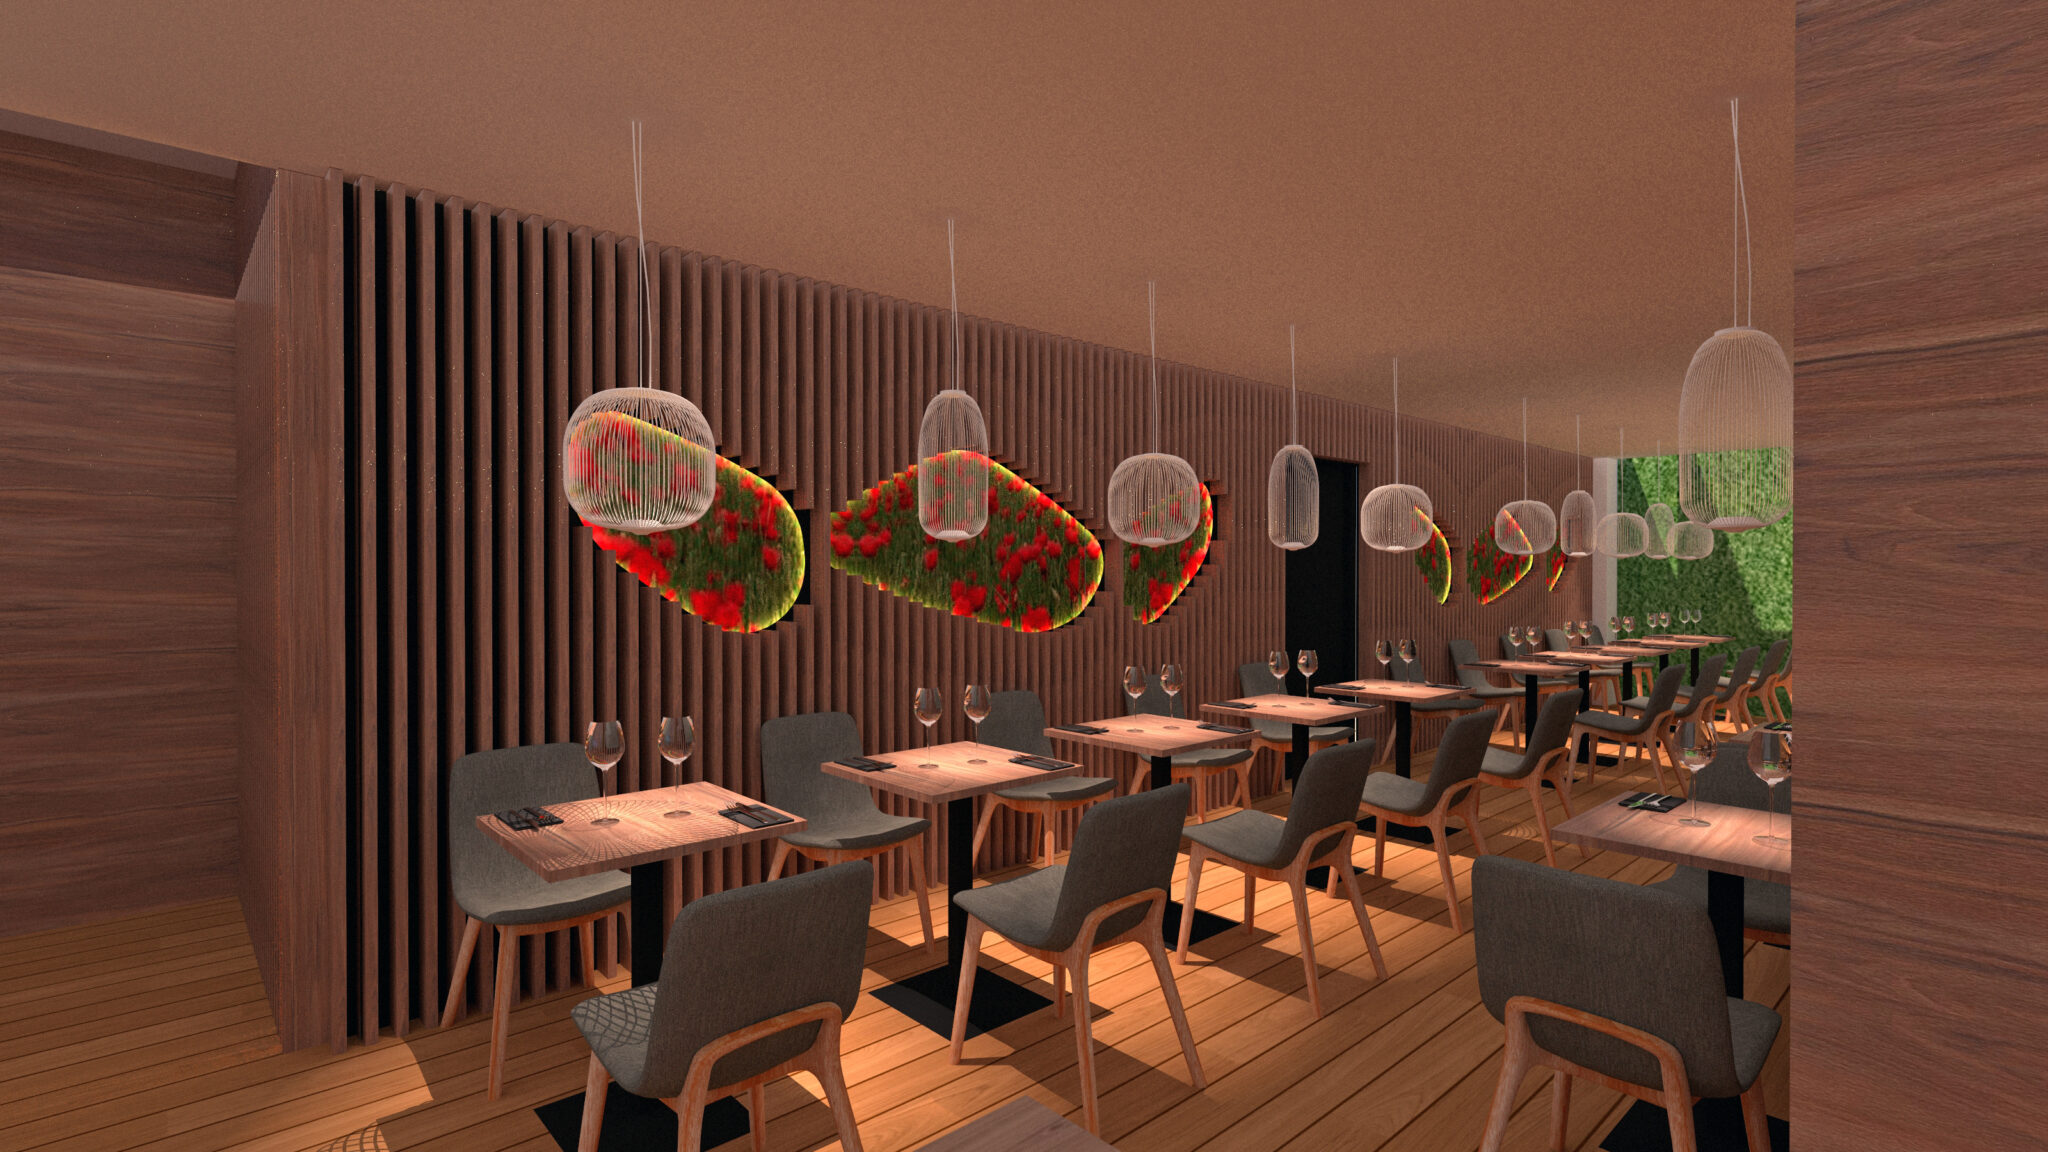 Restaurant Bepositive décor bois et cadre fleuri rétroéclairage led